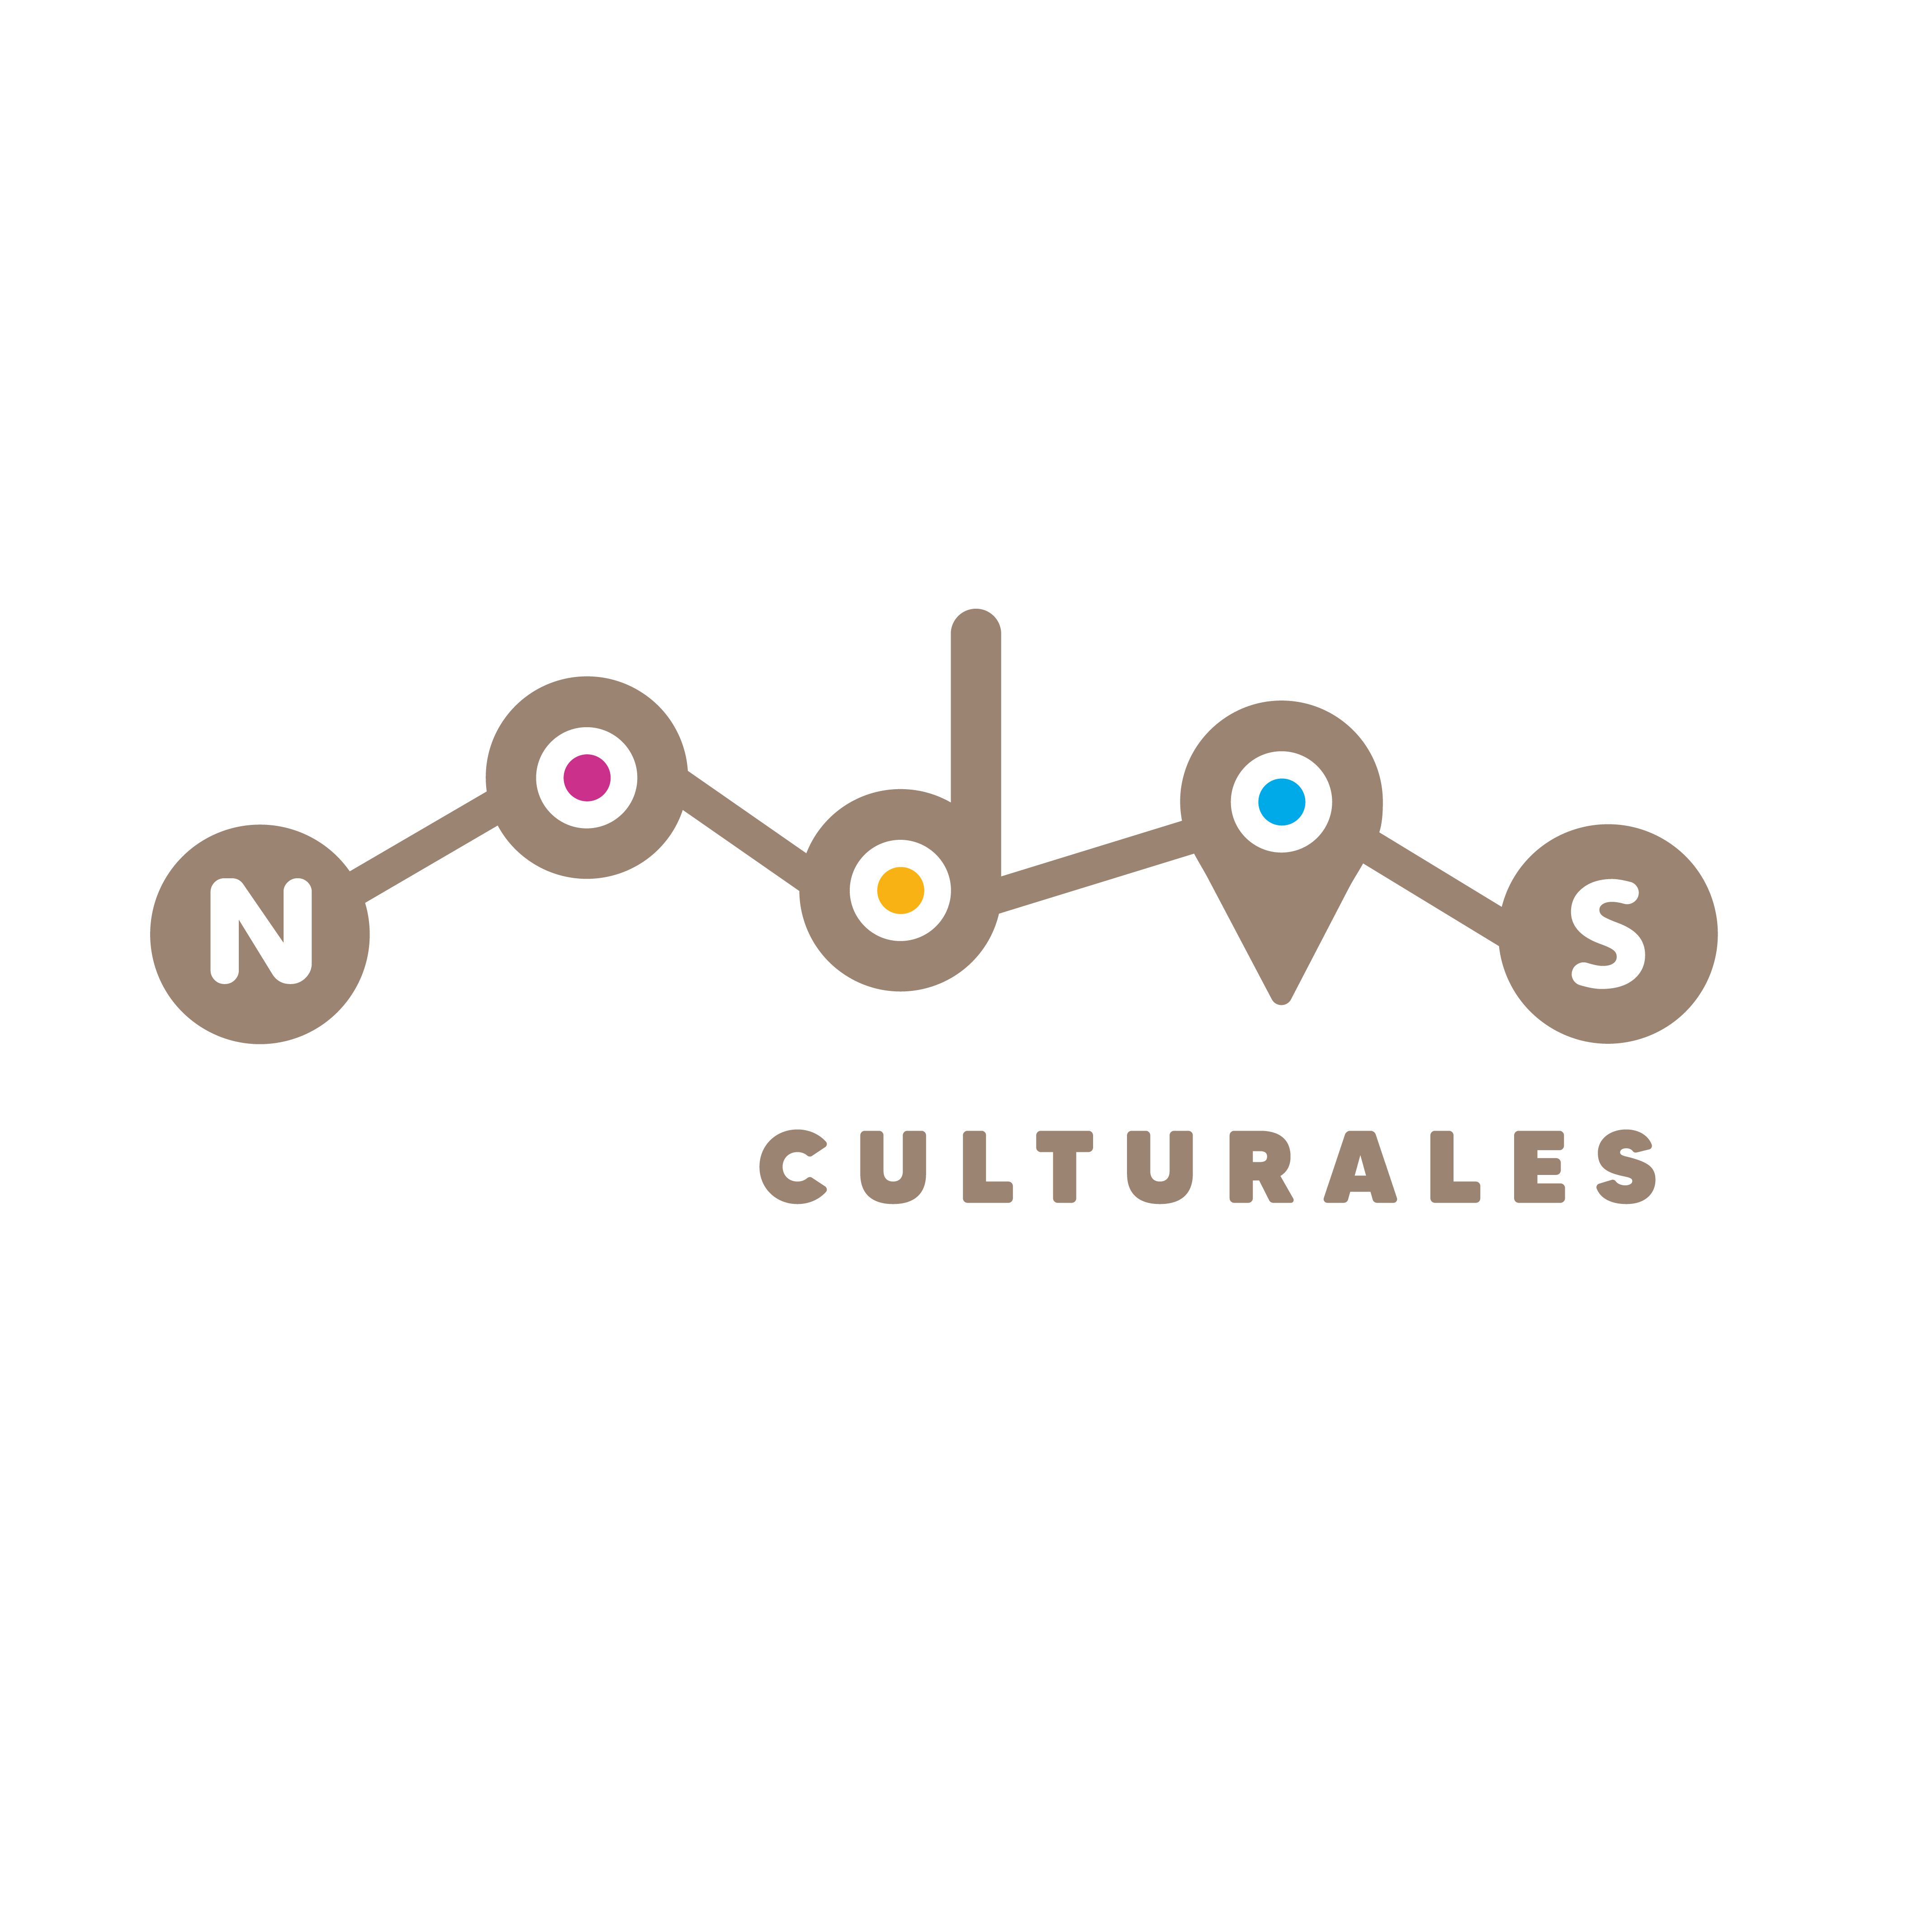 (c) Nodosculturalesperu.com